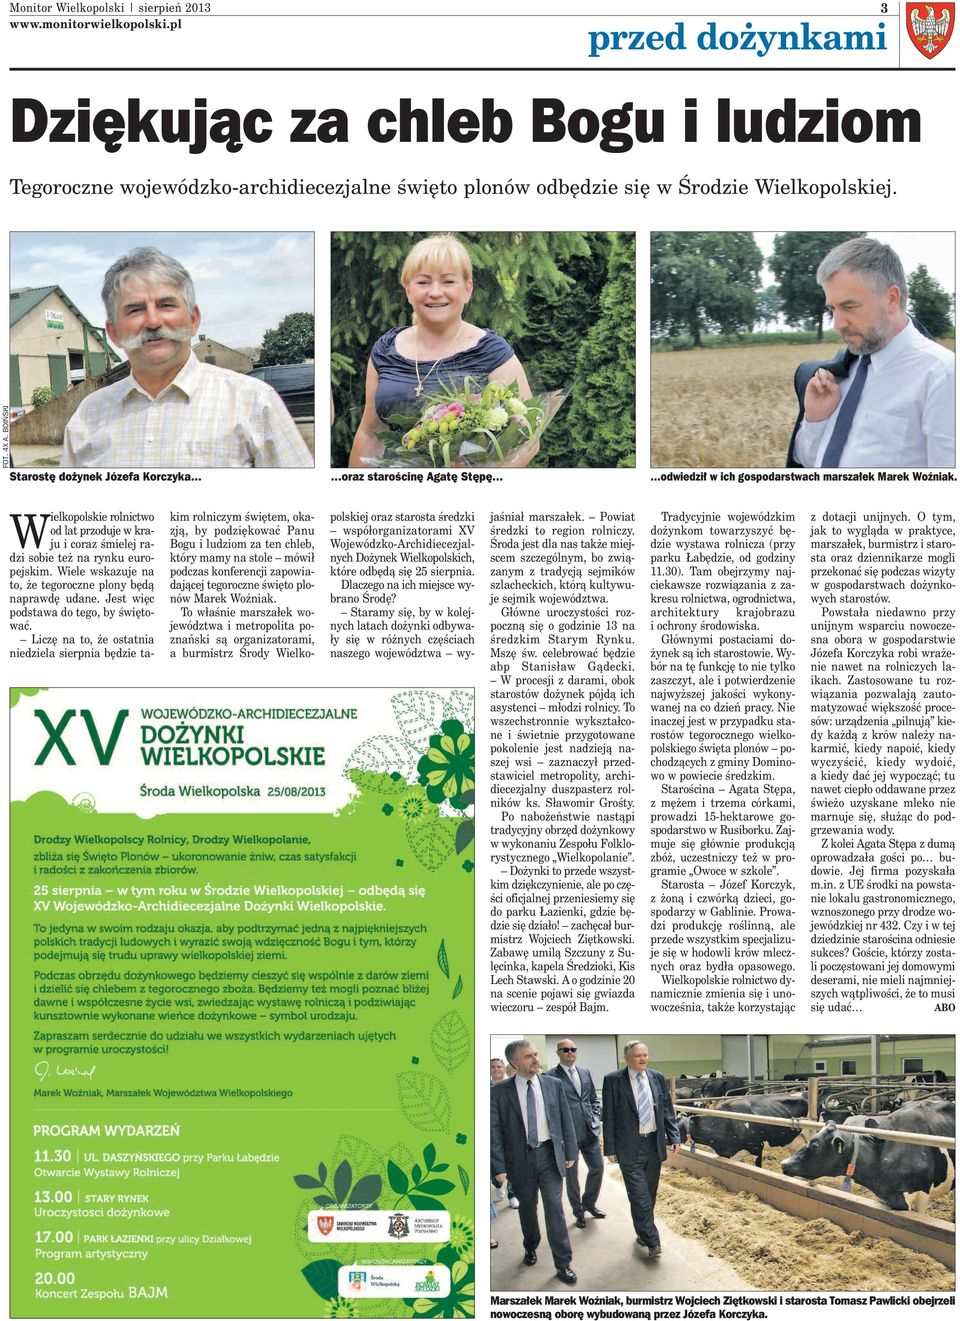 W ielkopolskie rolnictwo od lat przoduje w kraju i coraz śmielej radzi sobie też na rynku europejskim. Wiele wskazuje na to, że tegoroczne plony będą naprawdę udane.